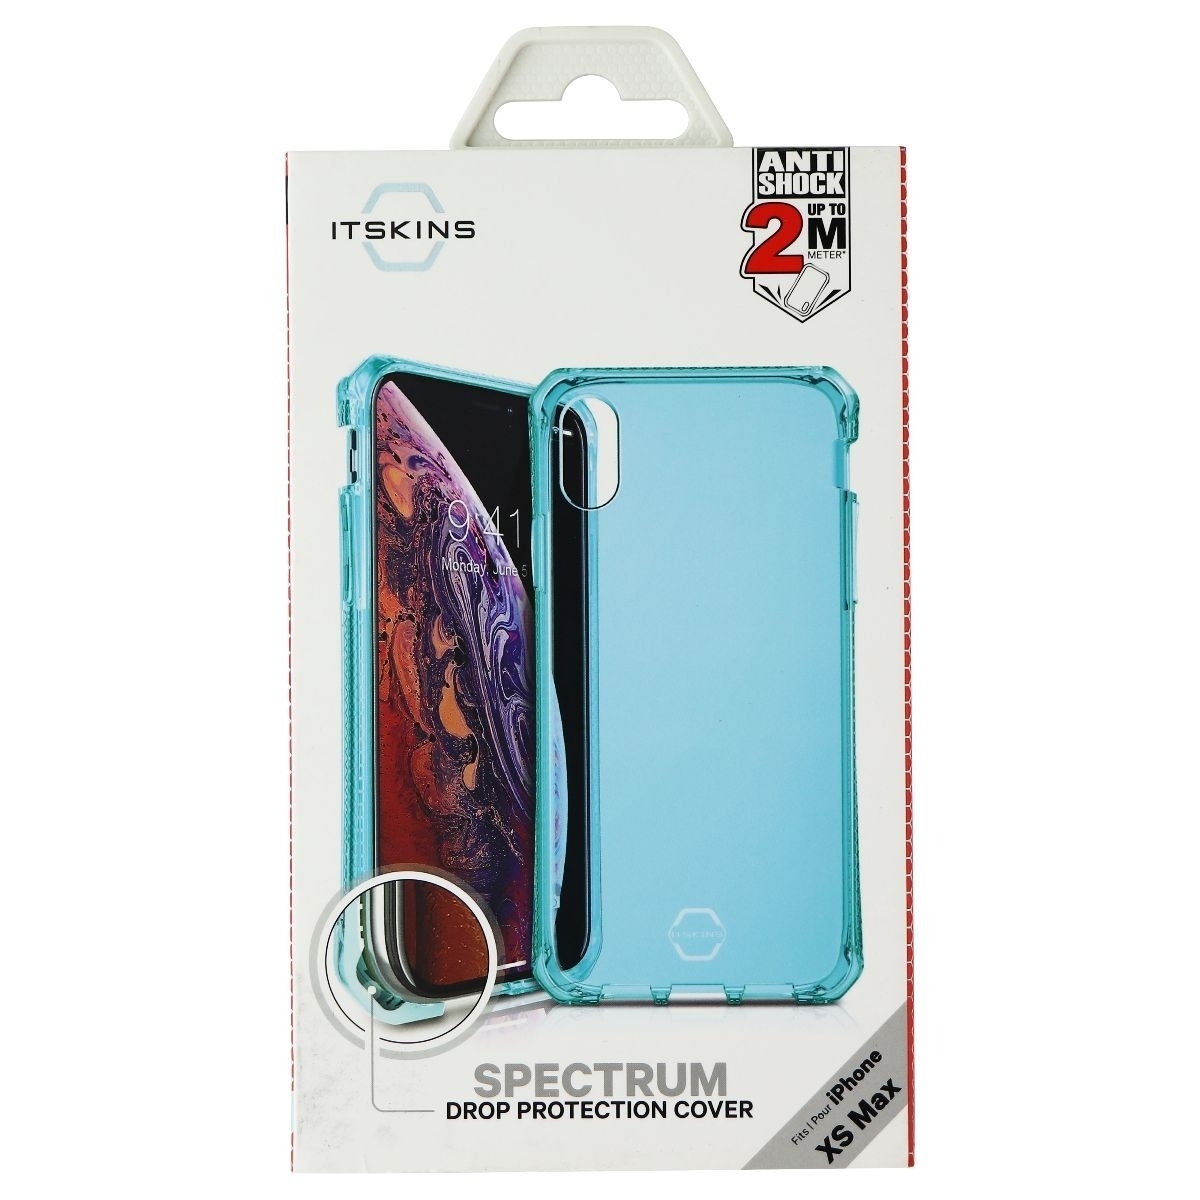 Itskins Spectrum Series Semi-Rigid Case For IPhone Xs Max Translucent Blue